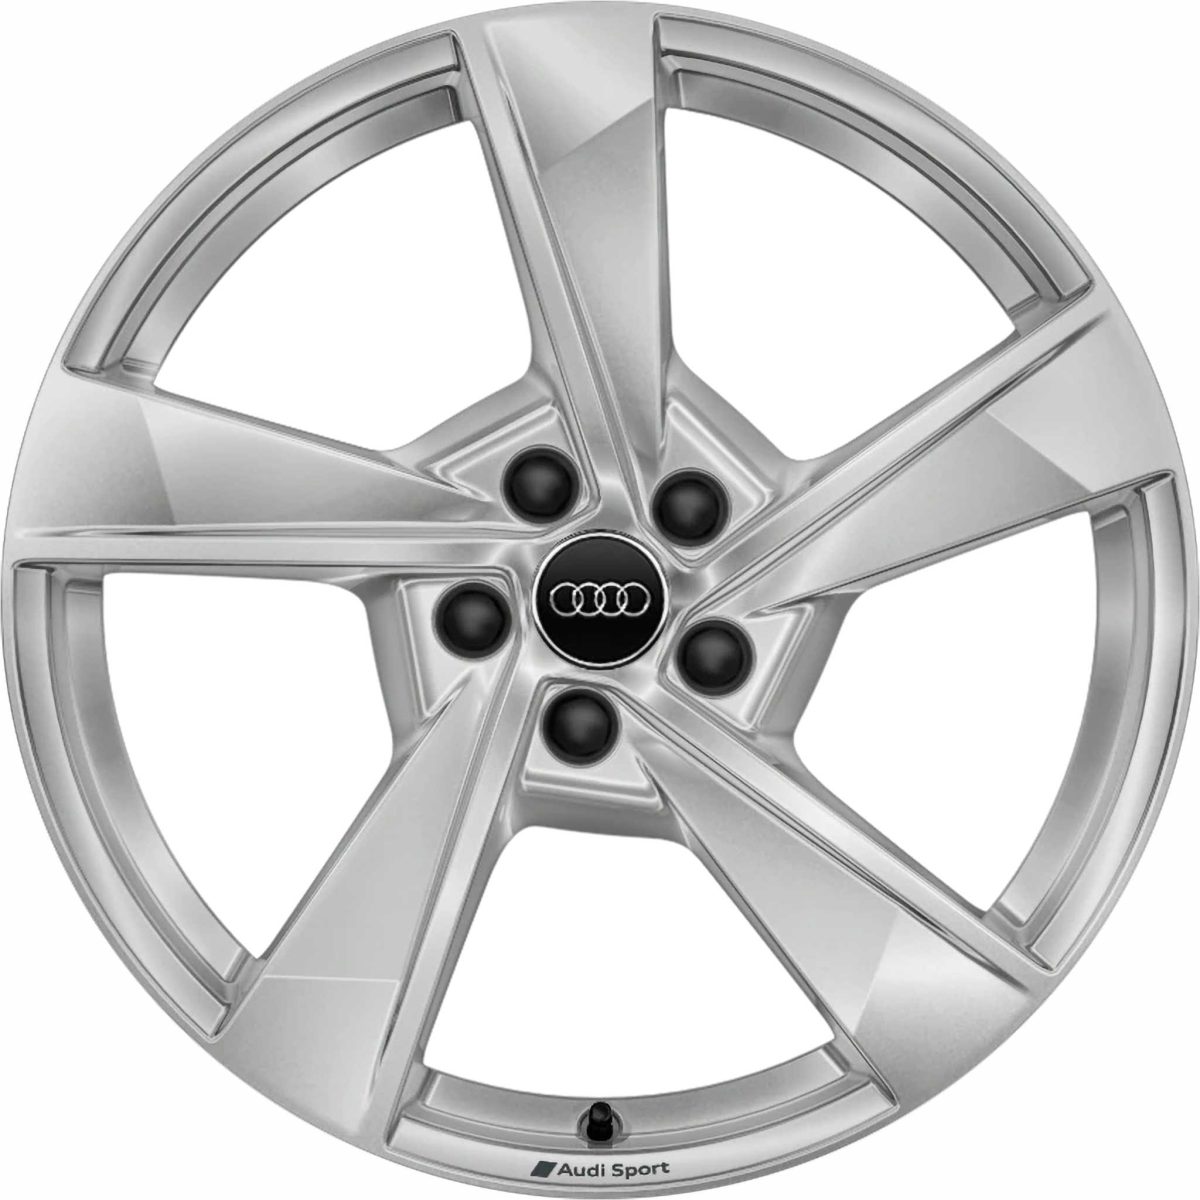 Genuine Audi A4 8W 5 Twist Spoke 19" Inch Alloy Wheels With Silver Finish 8W0 601 025 ES